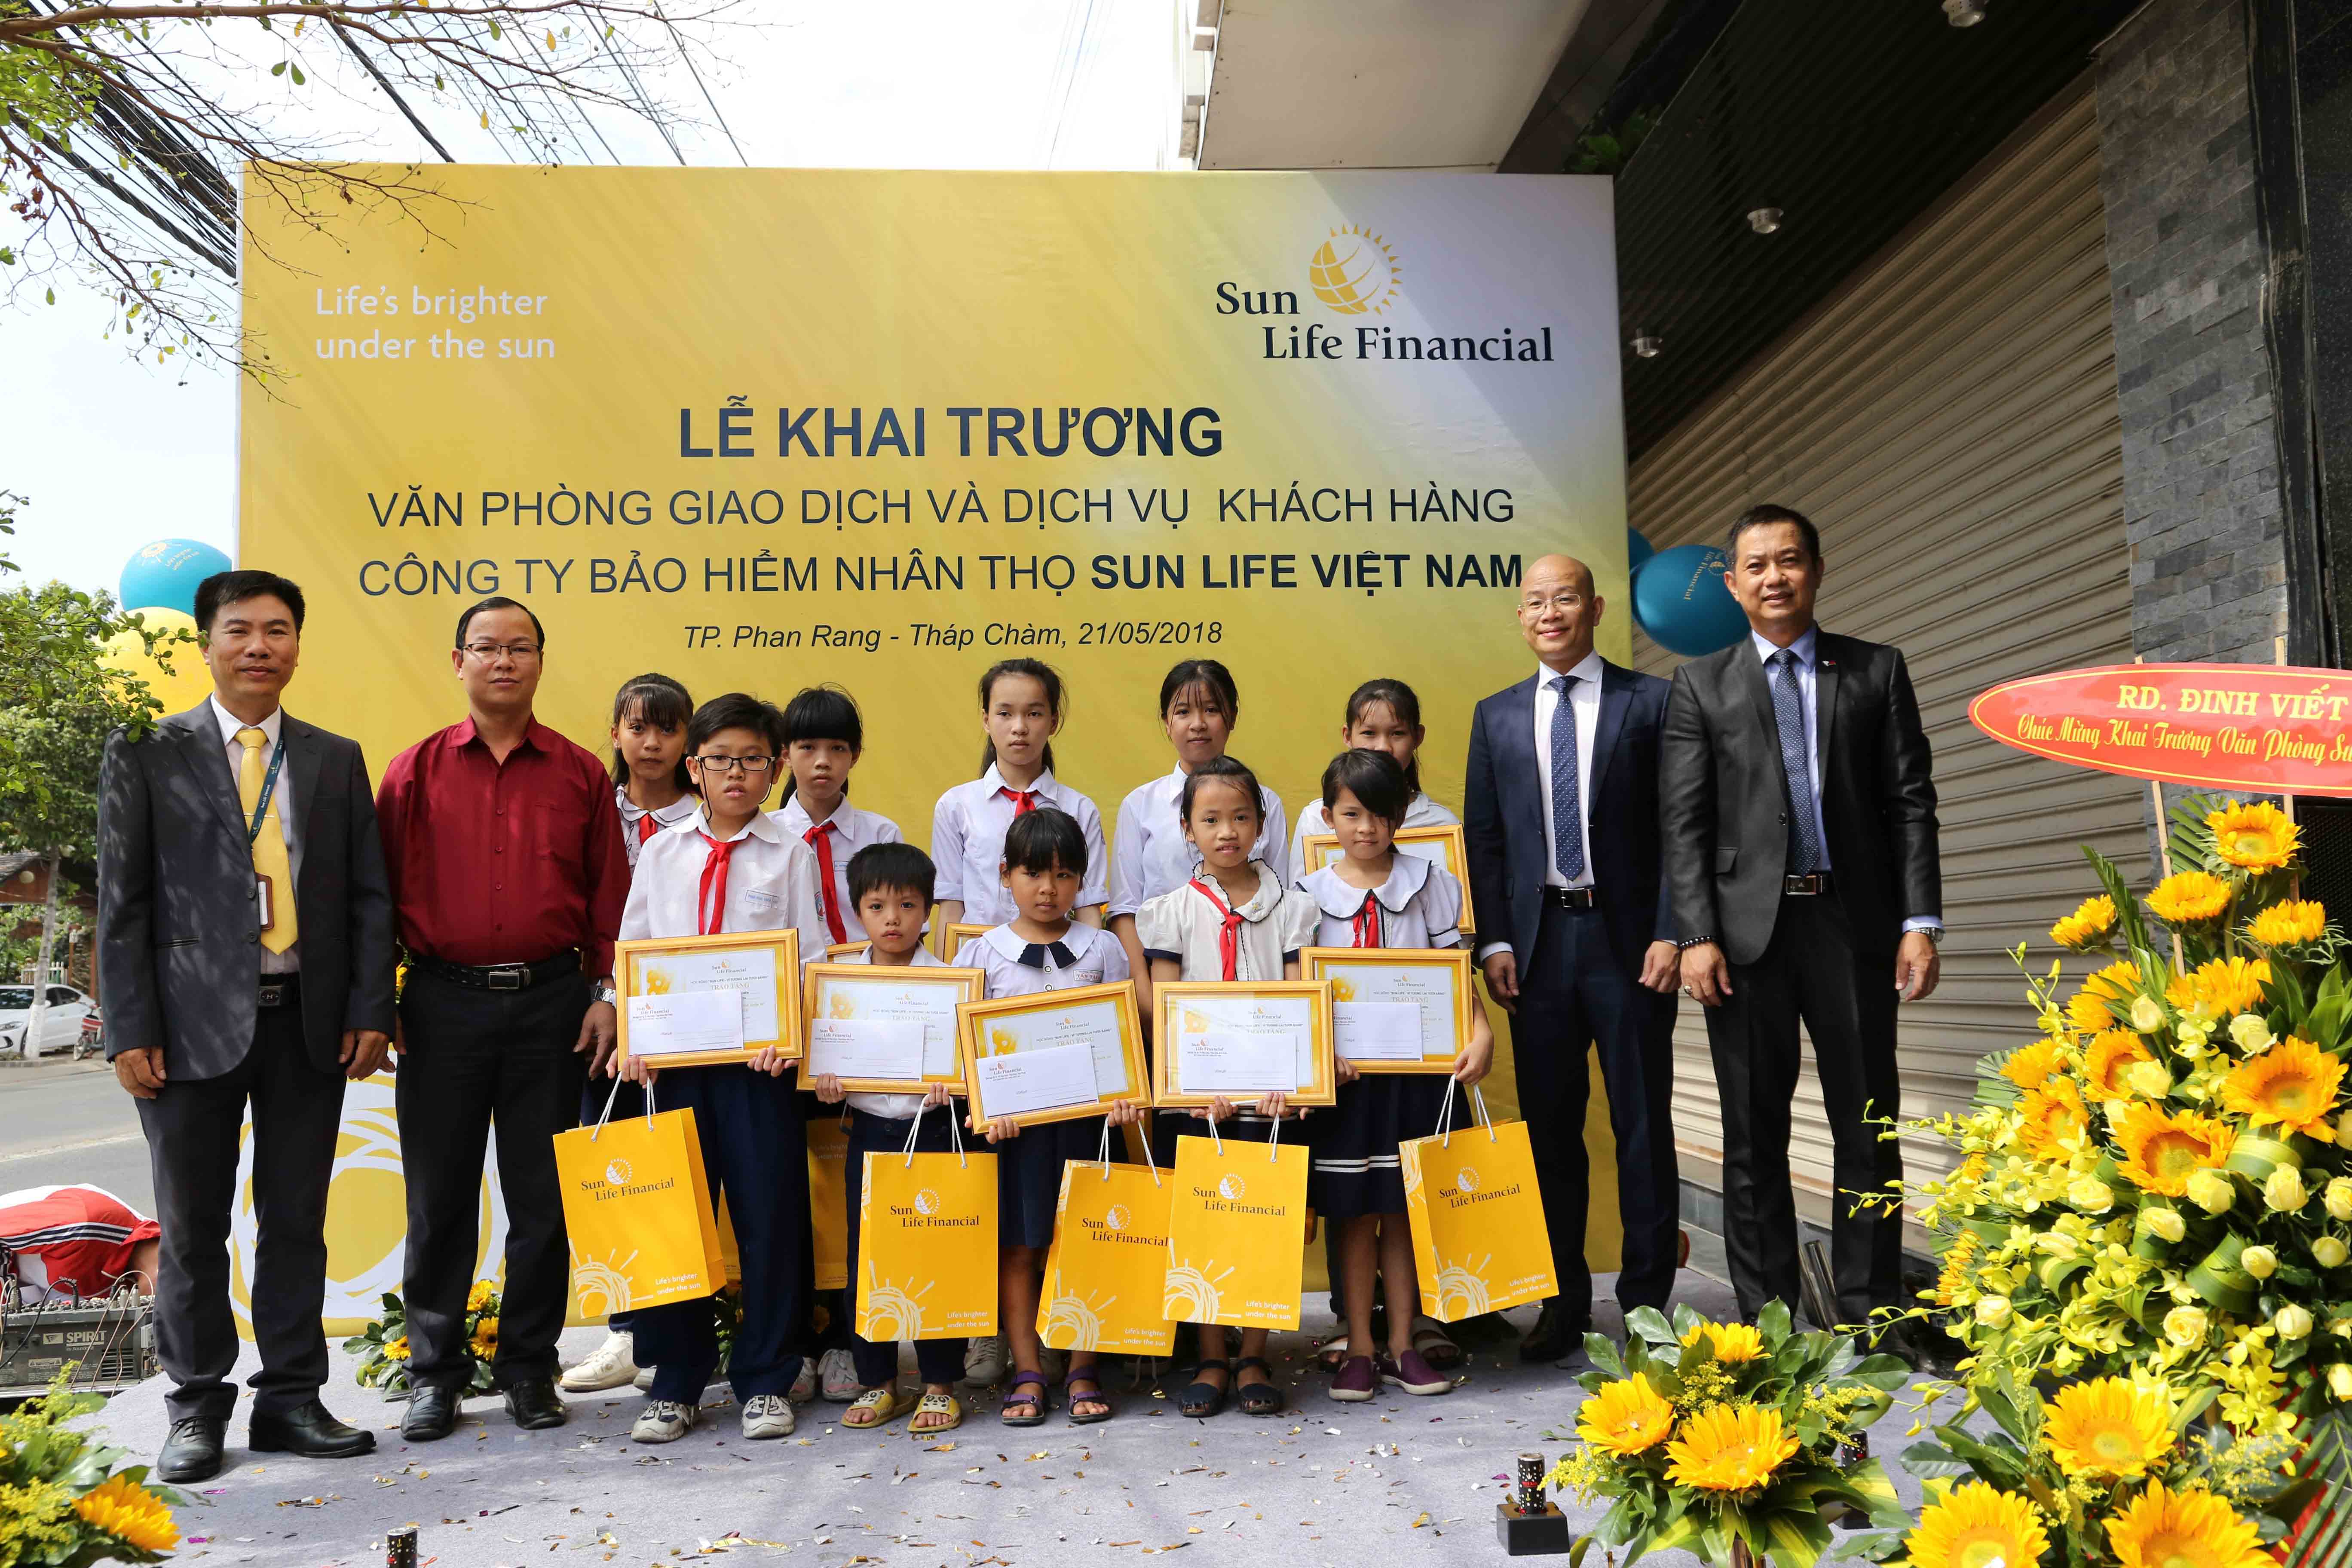 Sun Life Việt Nam chính thức khai trương Văn phòng Giao dịch và Dịch vụ Khách hàng tại Ninh Thuận